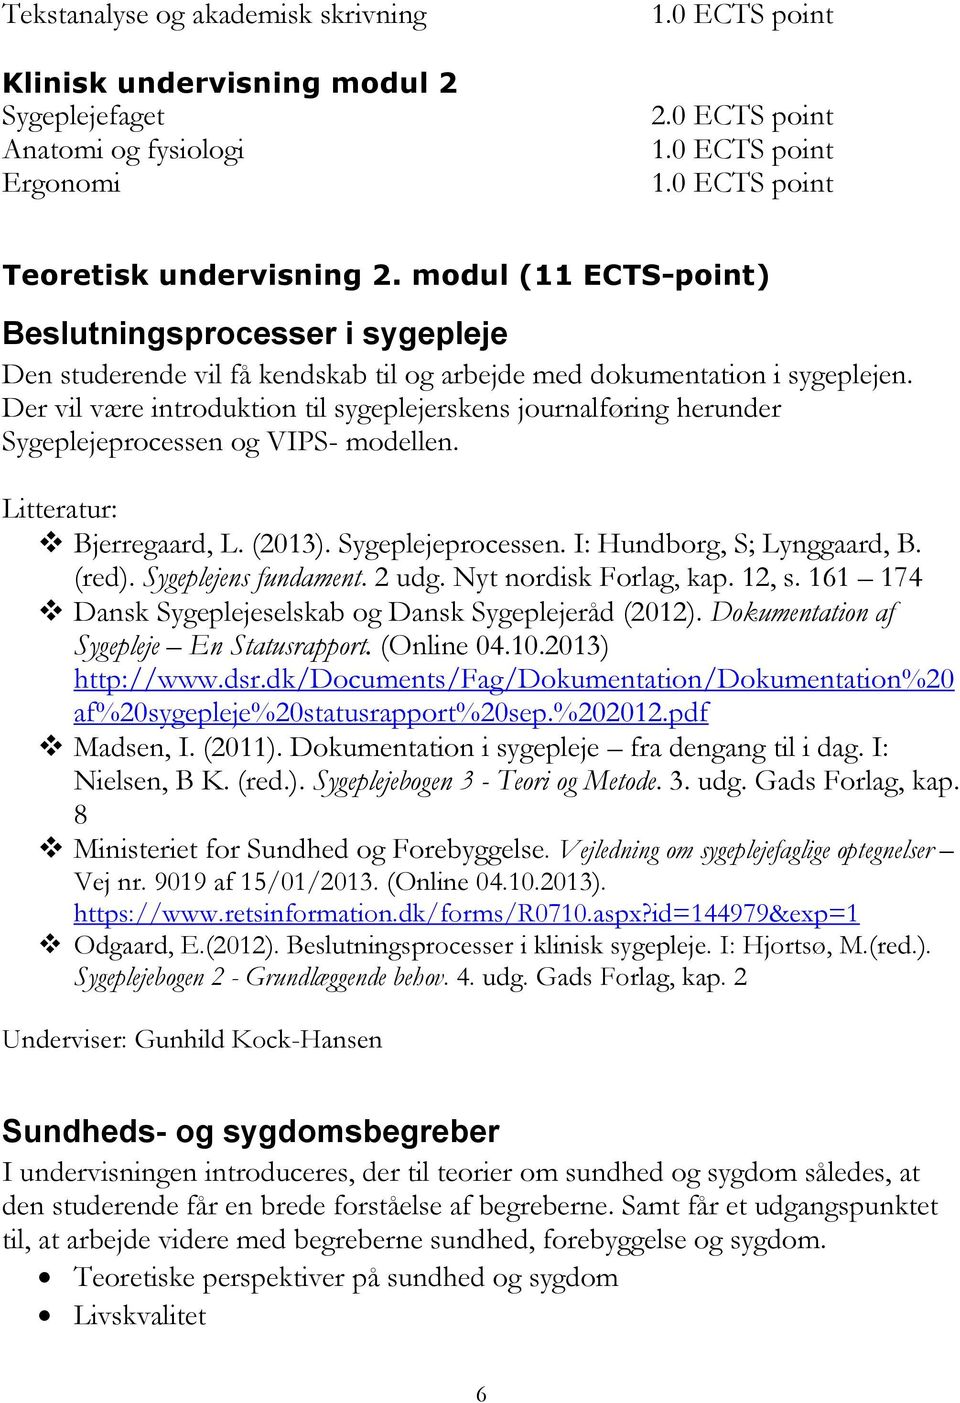 Der vil være introduktion til sygeplejerskens journalføring herunder Sygeplejeprocessen og VIPS- modellen. Litteratur: Bjerregaard, L. (2013). Sygeplejeprocessen. I: Hundborg, S; Lynggaard, B. (red).